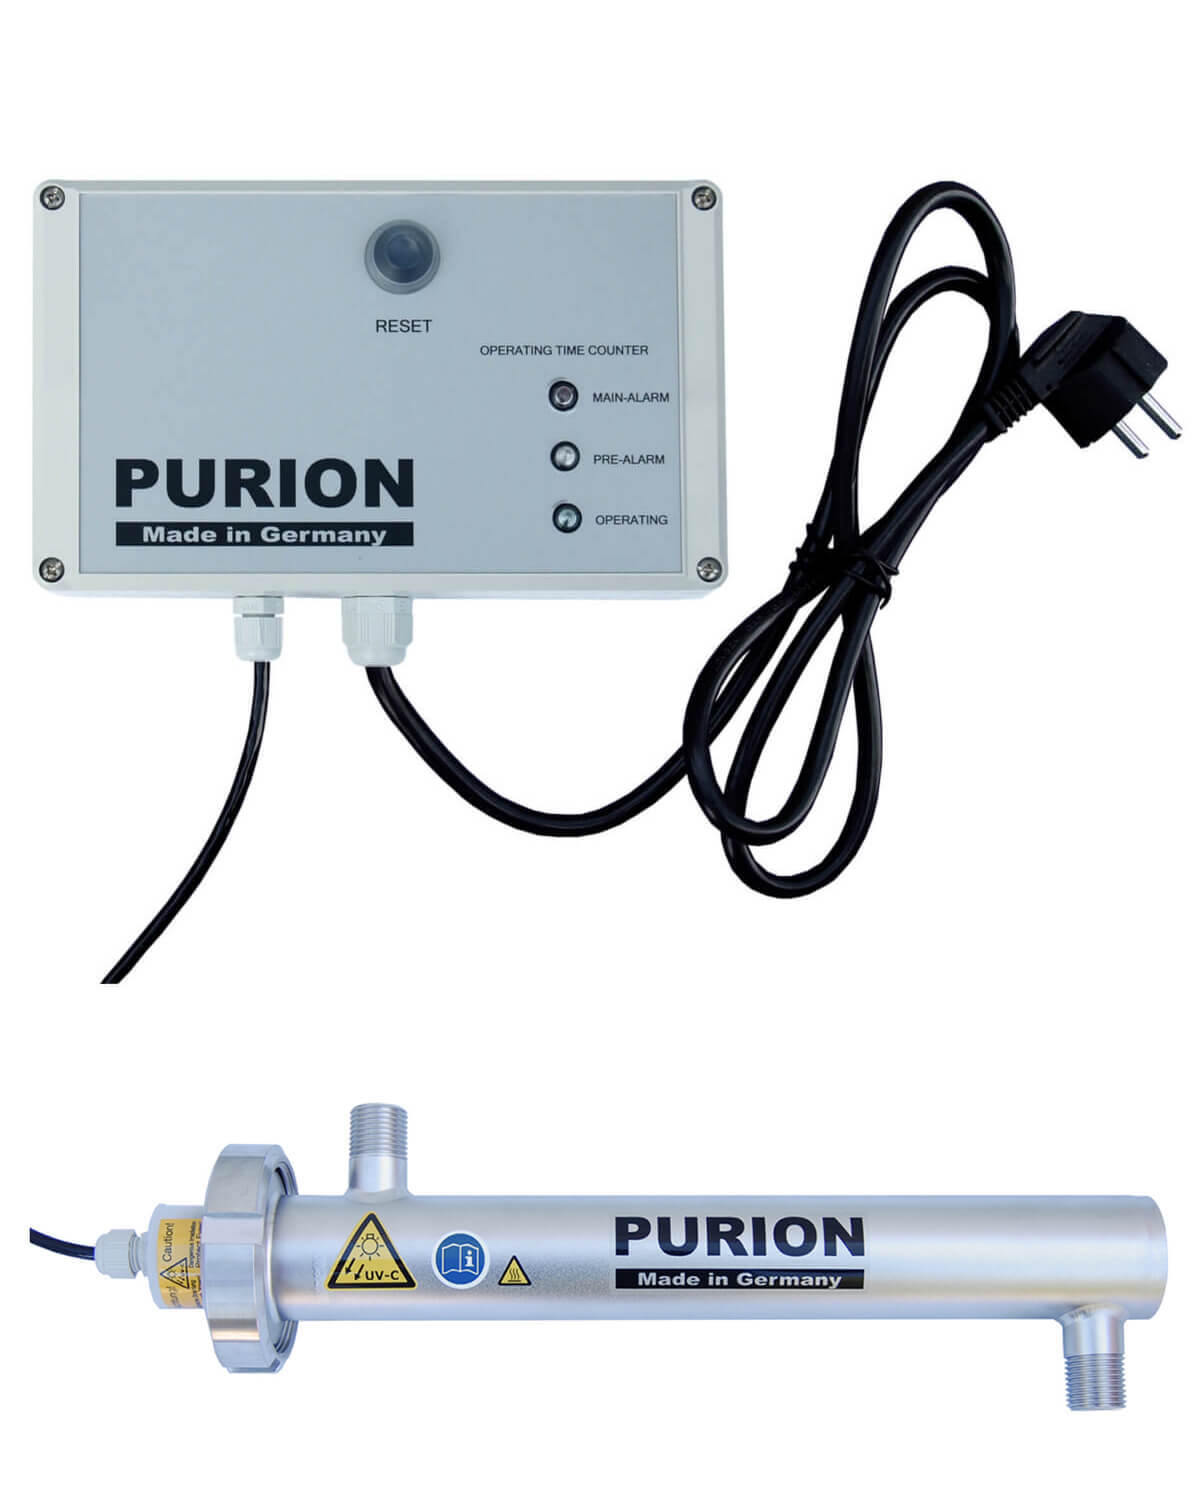 Der PURION 1000 PRO OTC Plus der Marke PURION GmbH ist ein Desinfektionsgerät, das mit UV-C-Licht arbeitet. Laut den Angaben des Herstellers sollte es nachgehen